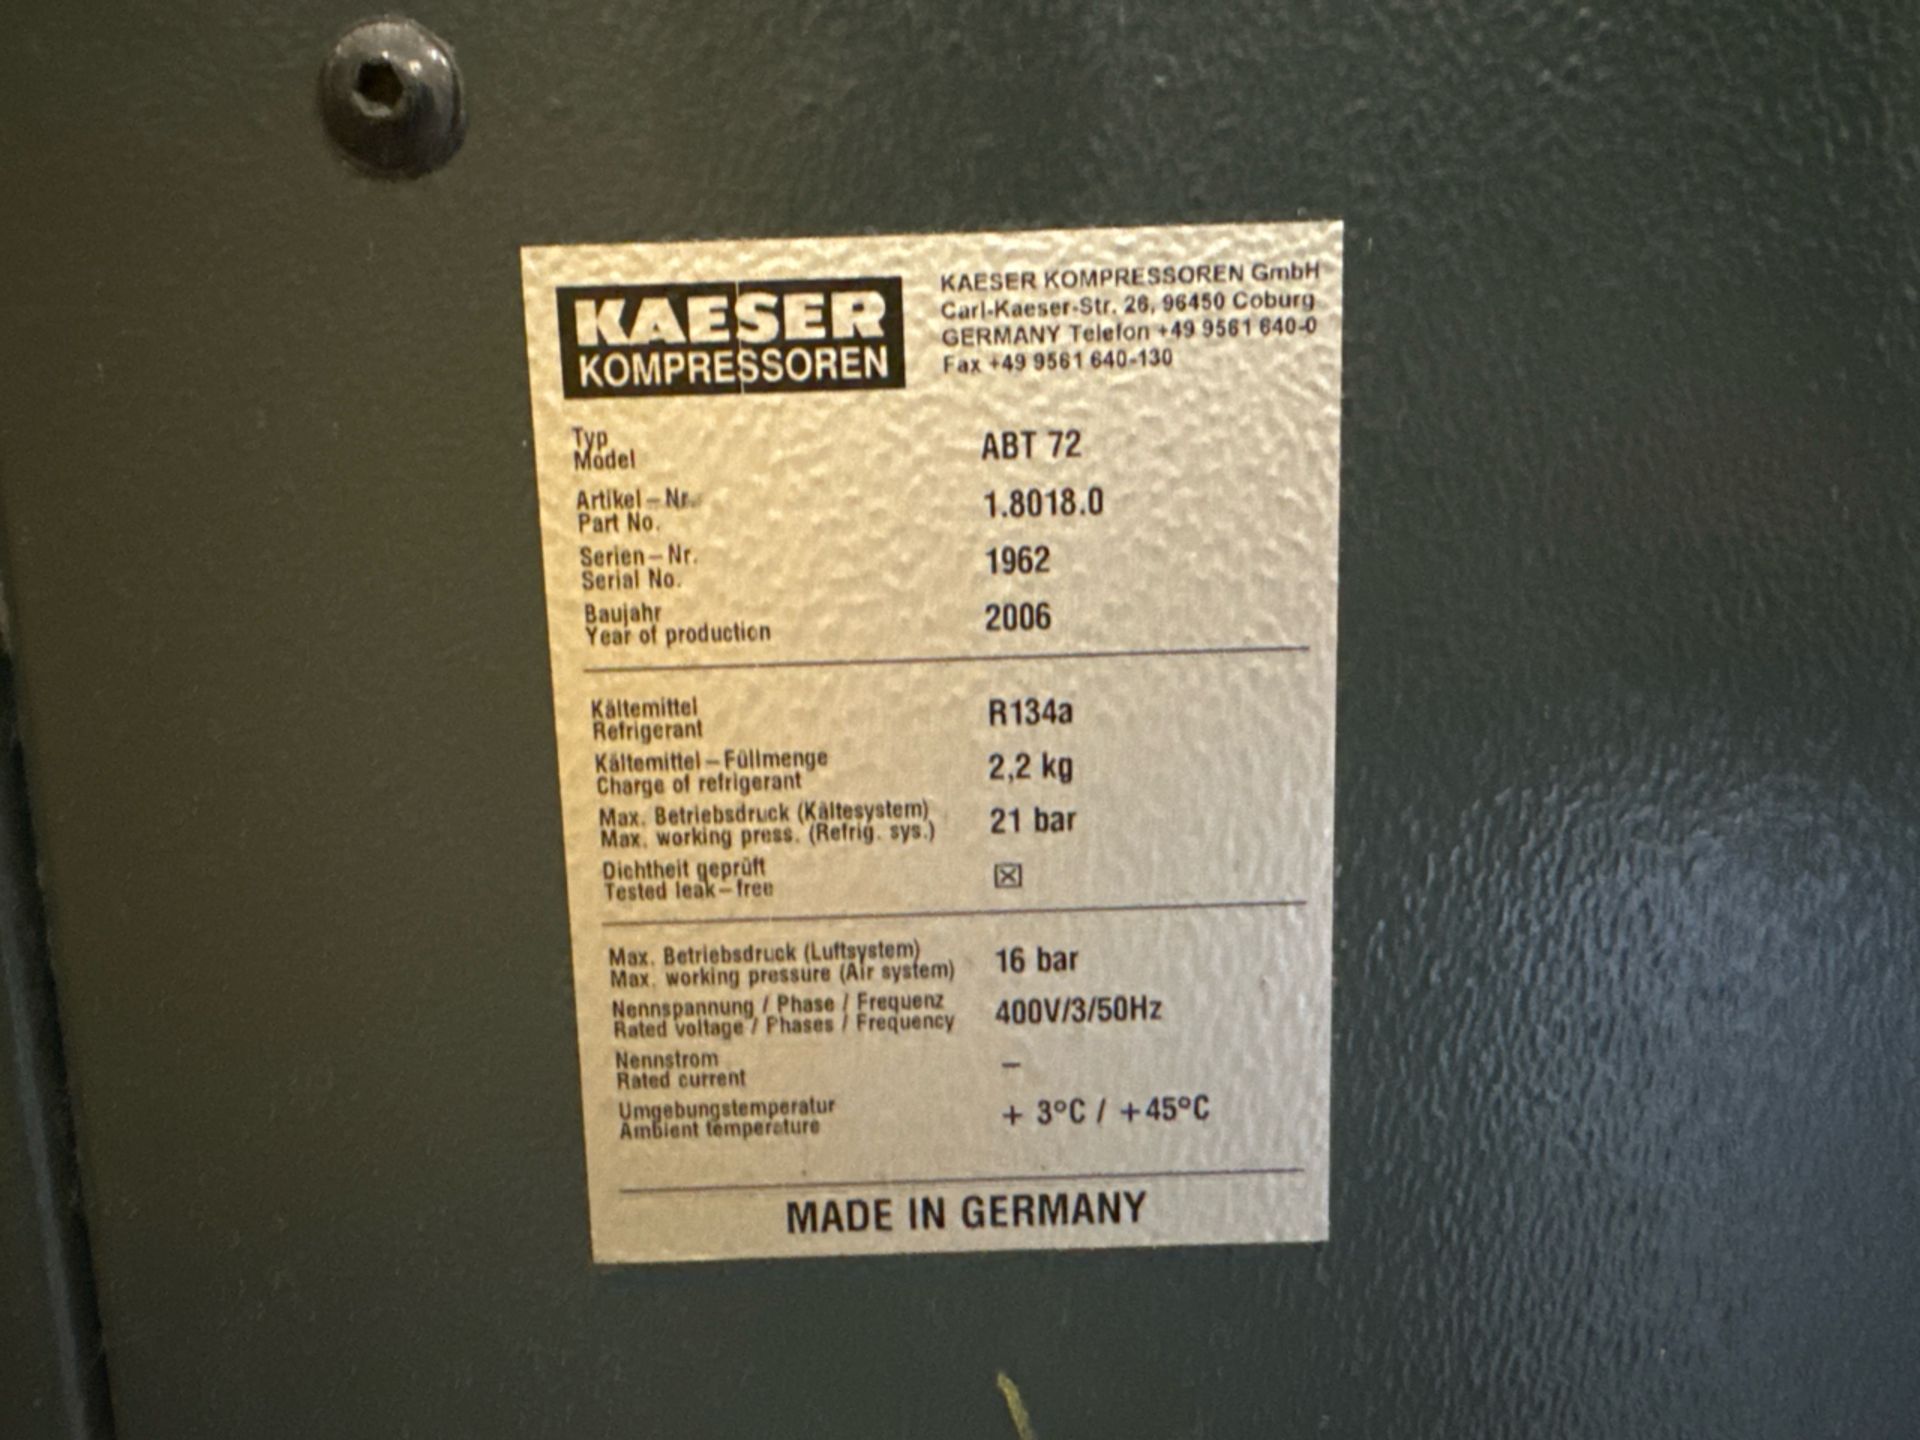 Kaeser Compressor 2006 - Image 2 of 3